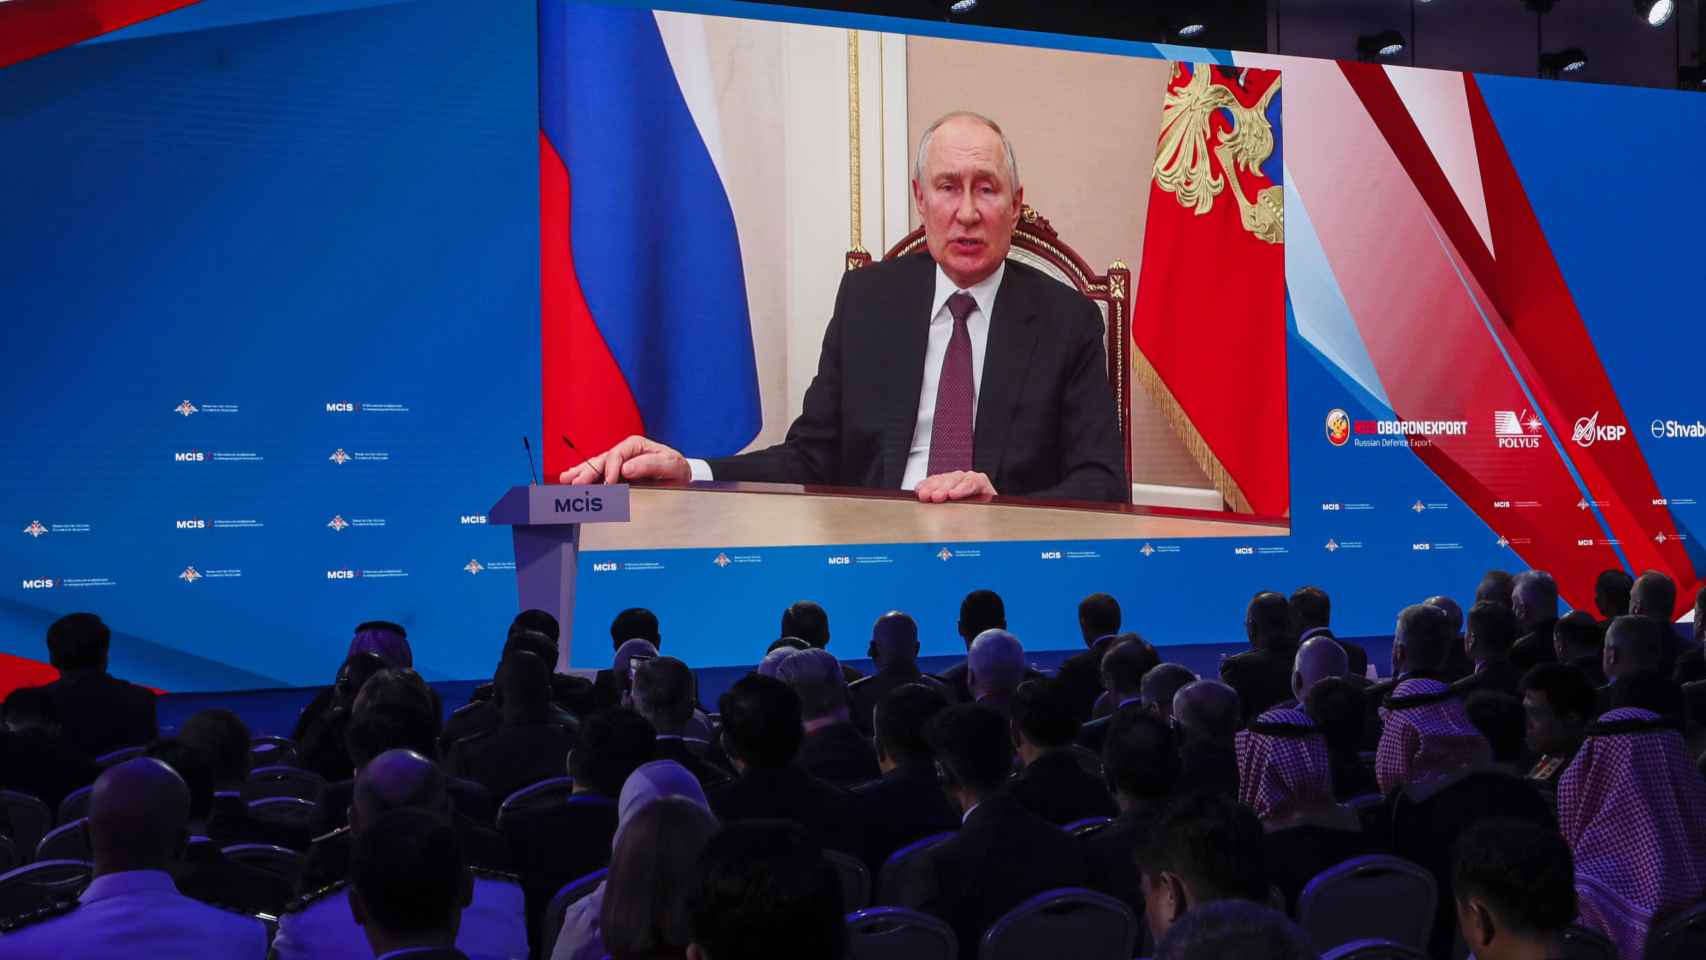 El presidente ruso Vladímir Putin da un discurso por videoconferencia durante la 11ª Conferencia de Seguridad Internacional celebrada en Moscú.